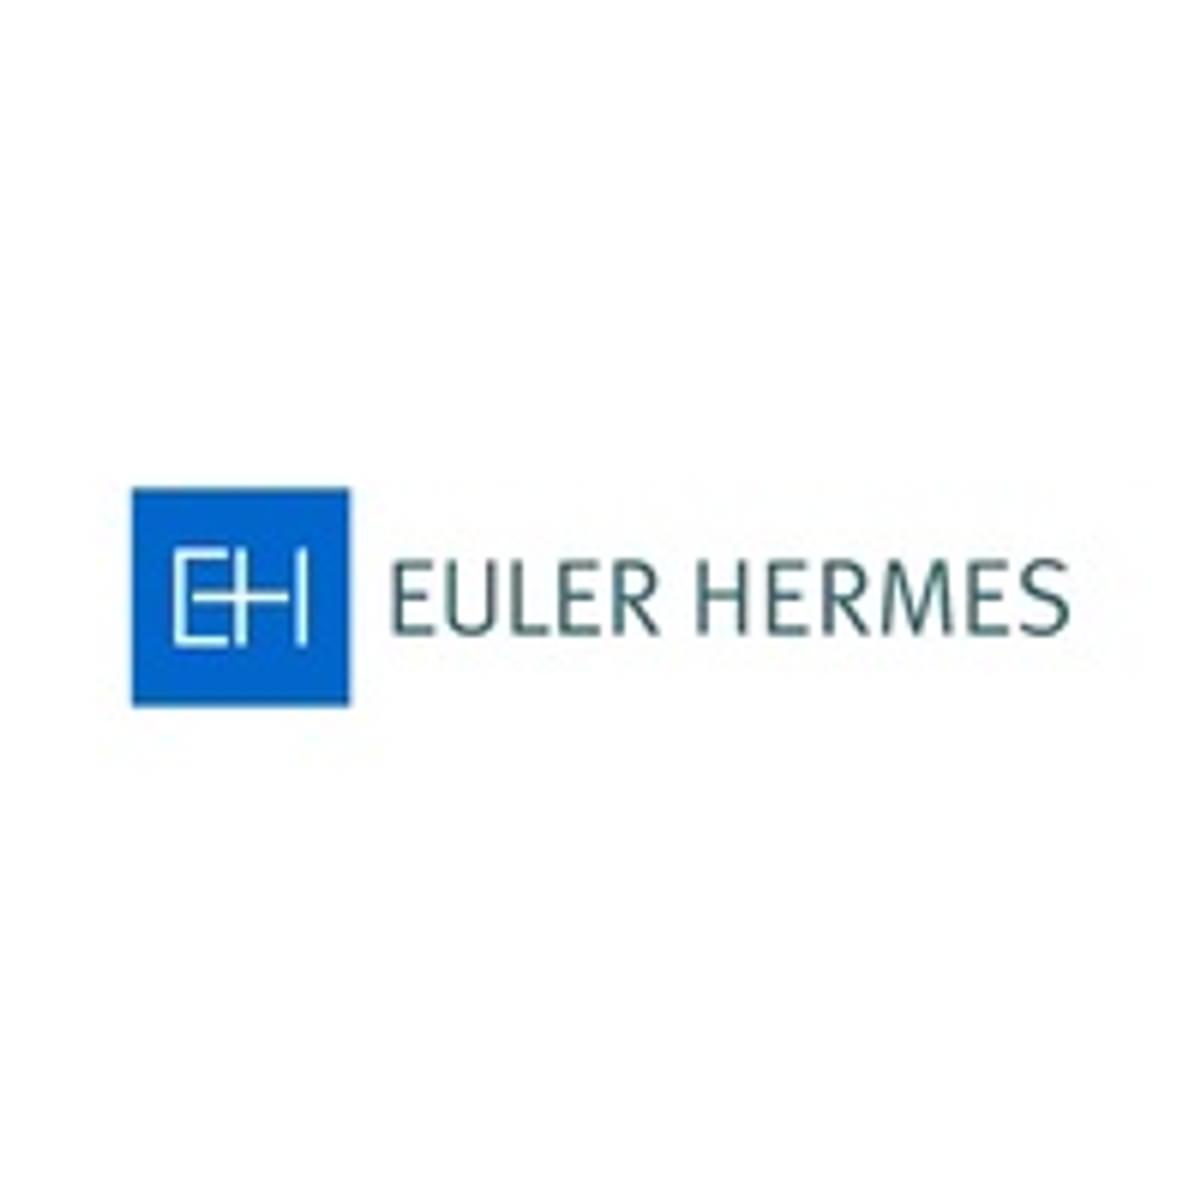 Euler Hermes: kans op een recessie begin 2020 is erg groot image